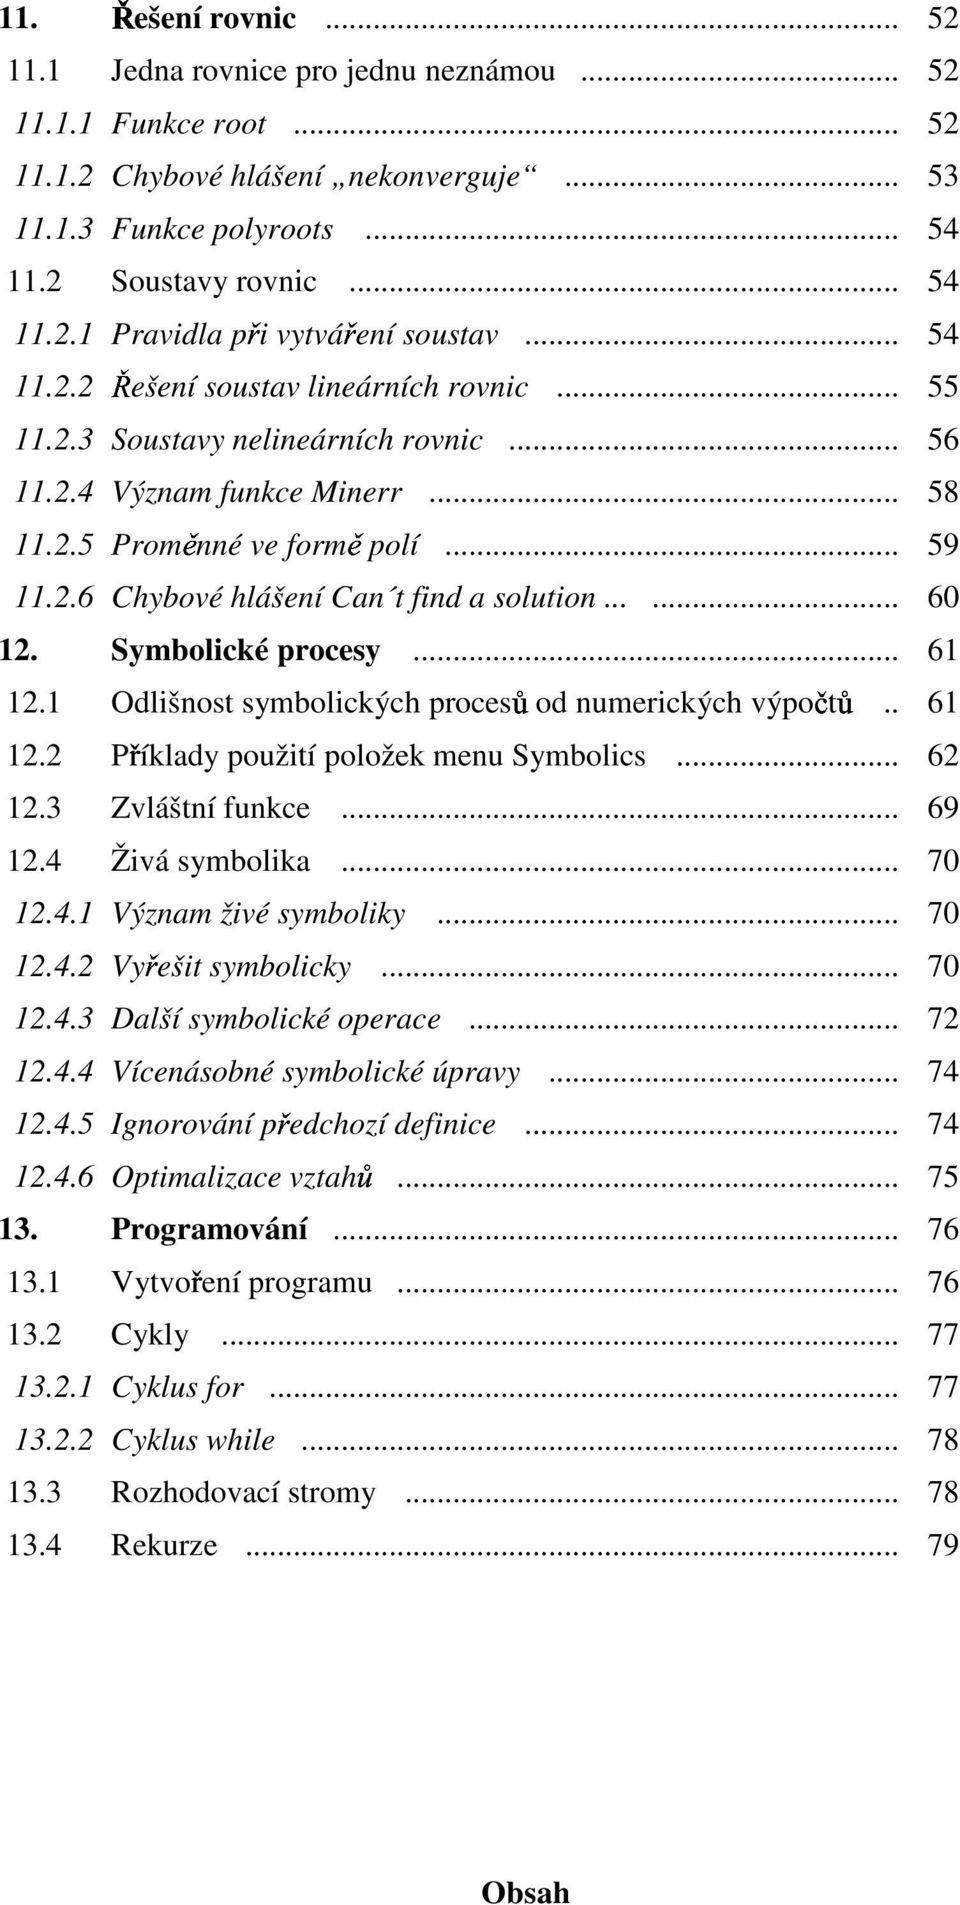 Symbolické procesy... 6. Odlišnost symbolických procesů od numerických výpočtů.. 6. Příklady použití položek menu Symbolics... 6.3 Zvláštní funkce... 69.4 Živá symbolika... 70.4. Význam živé symboliky.